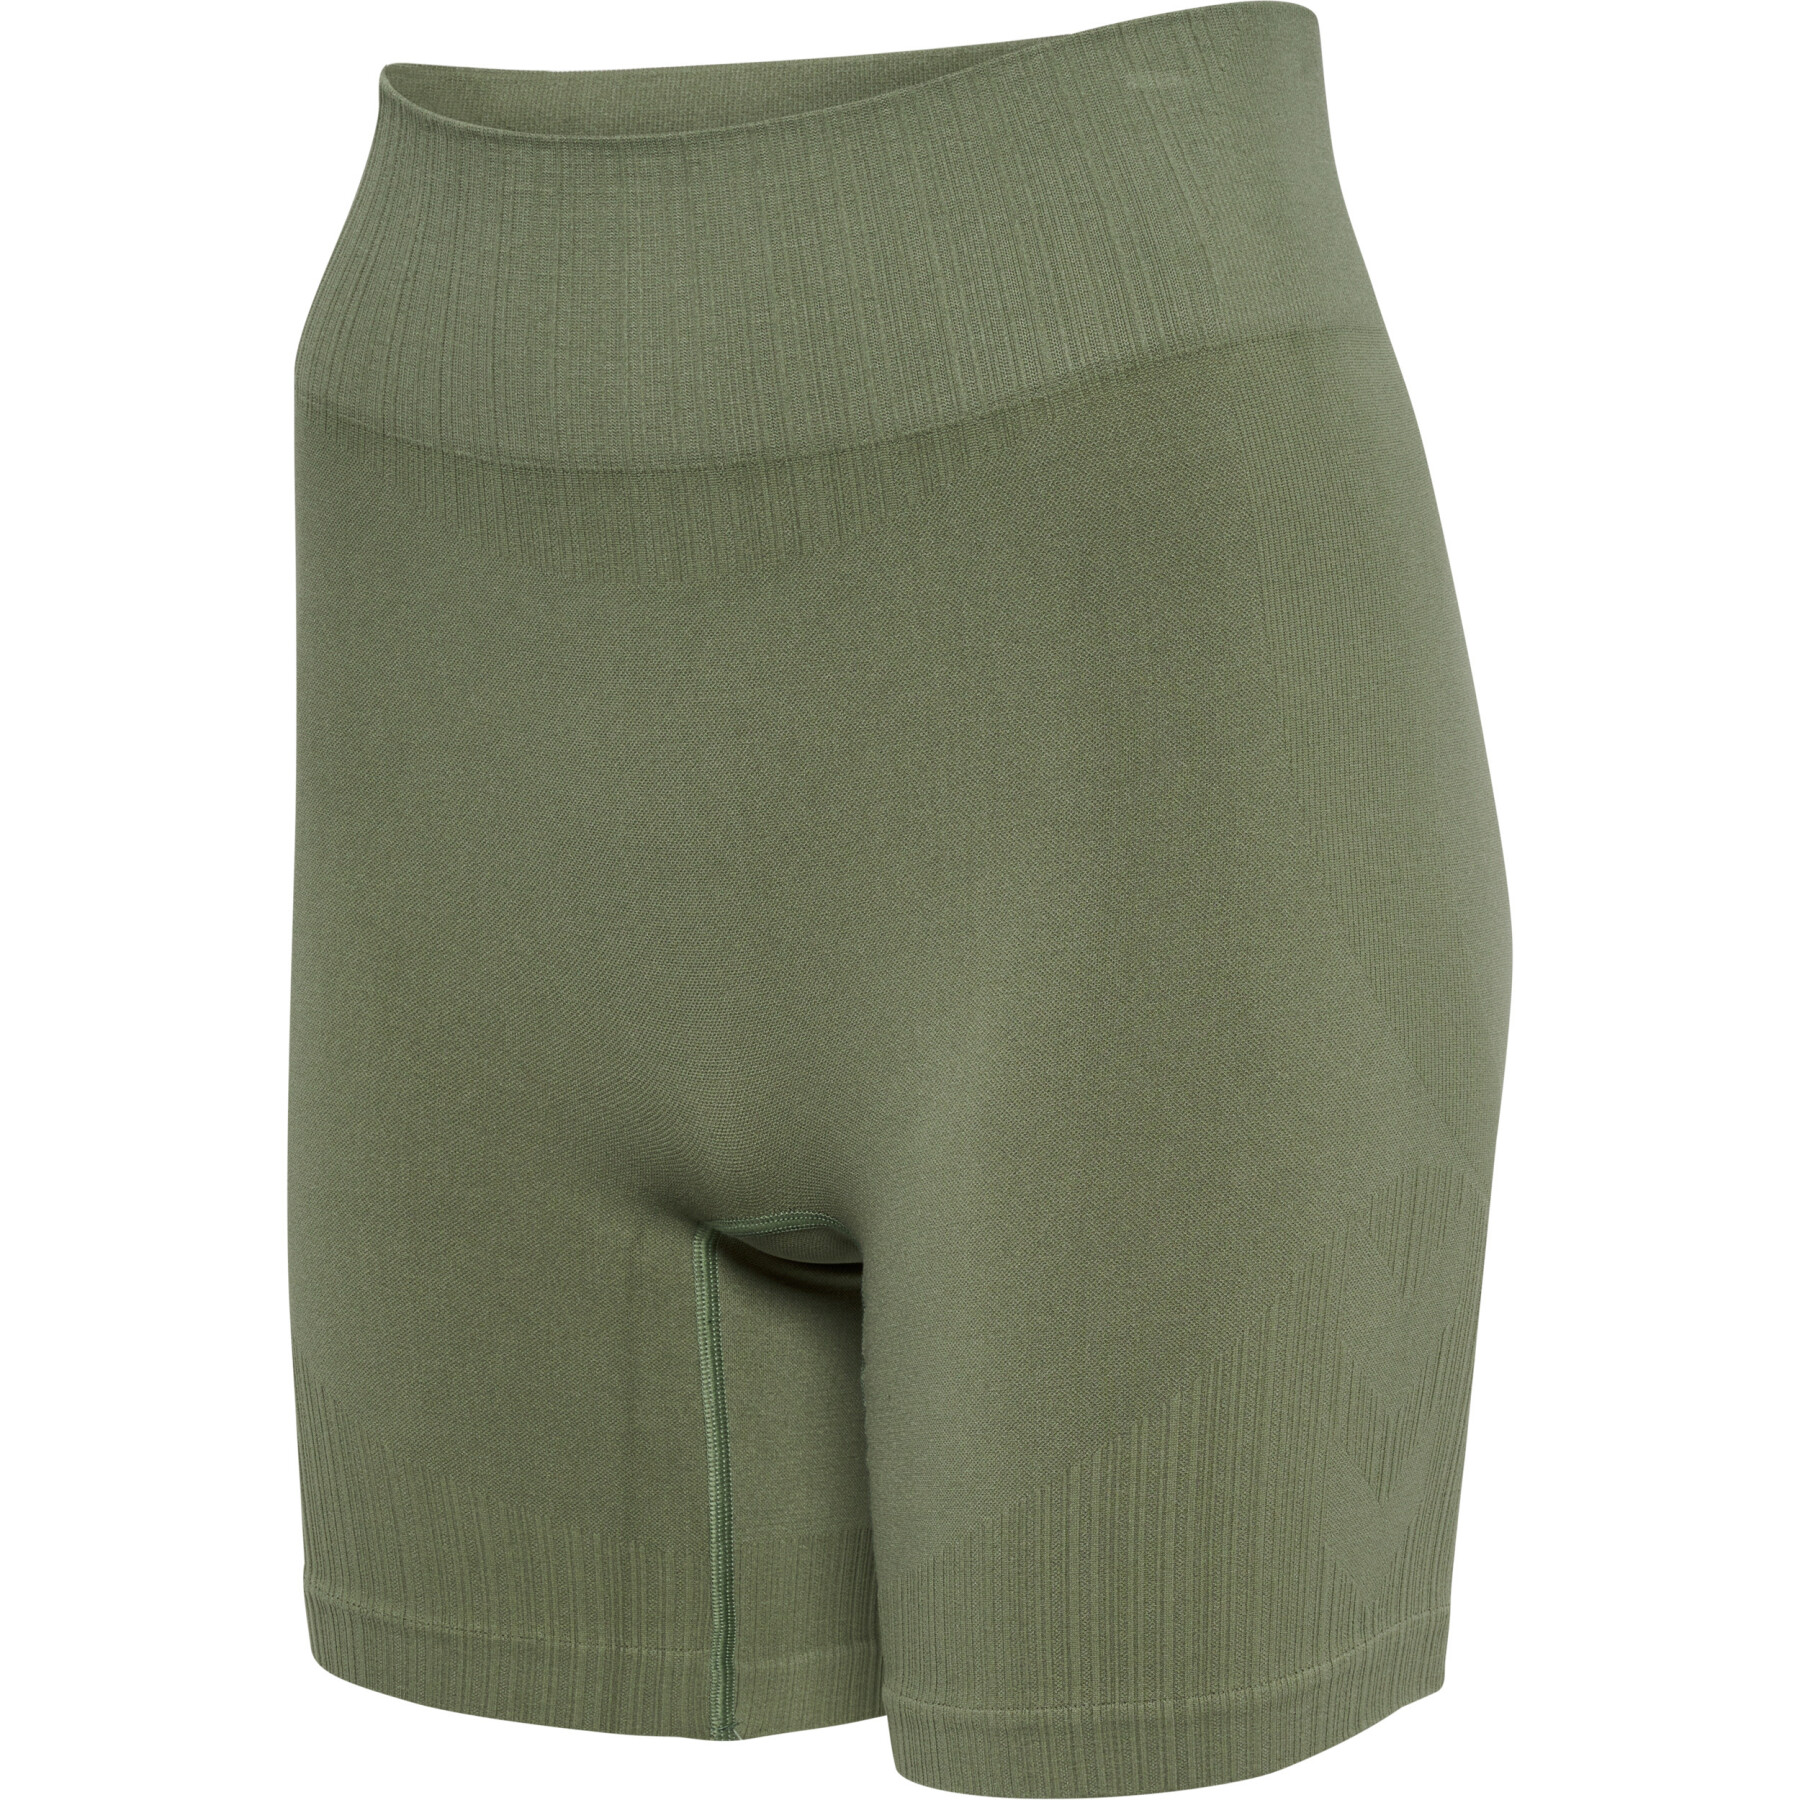 Naadloze shorts voor dames Hummel MT Define Scrunch